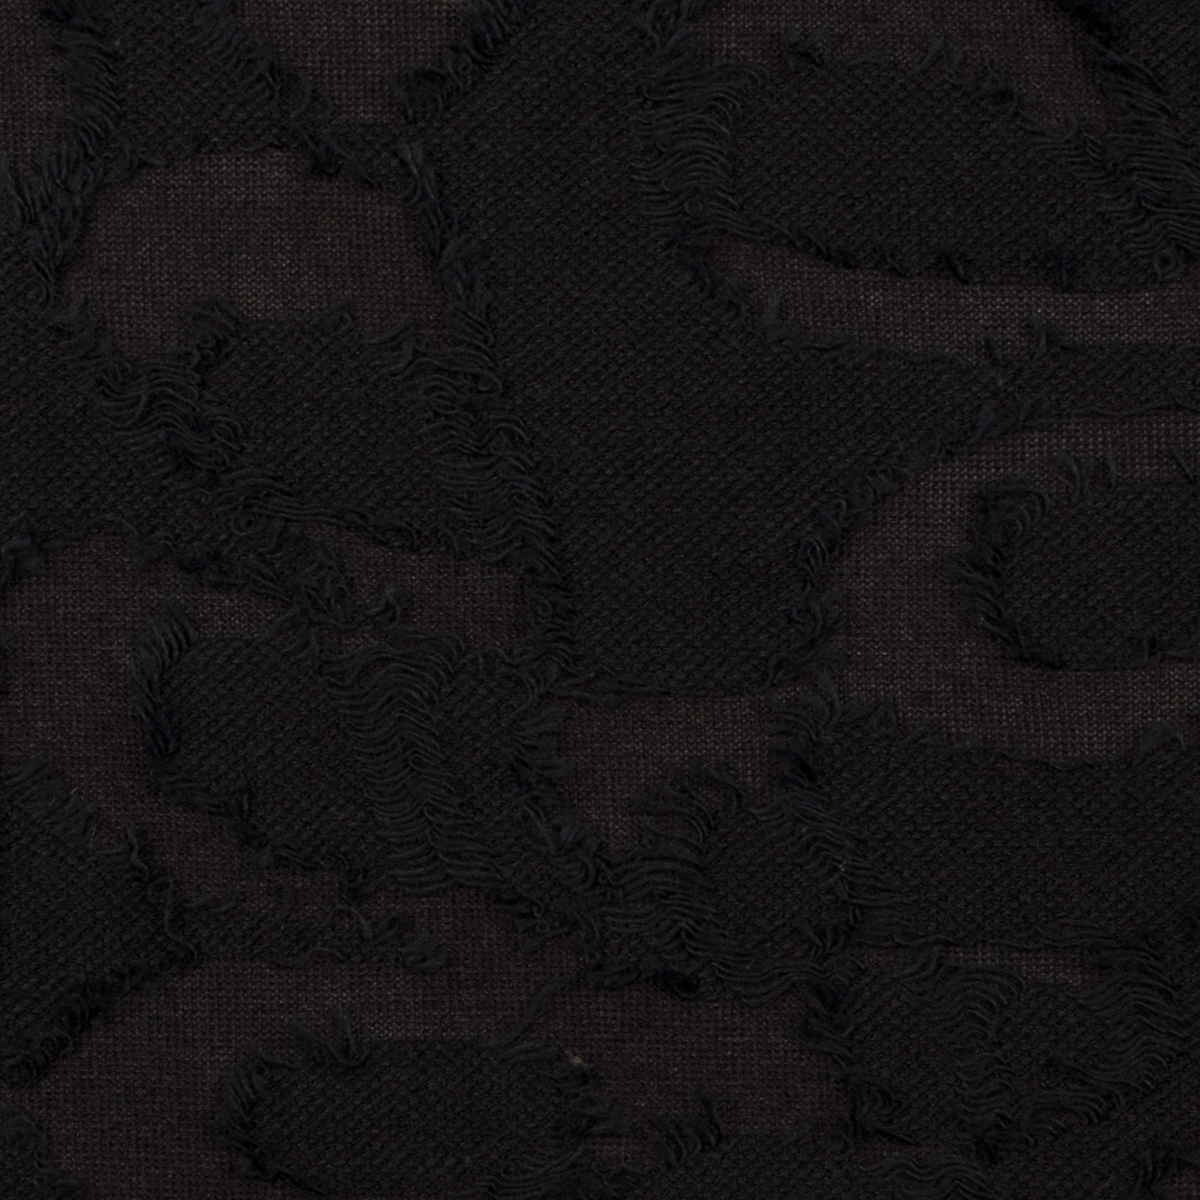 【アウトレット】コットン混×フリンジ(ブラック)×カットジャガード・ニットのサムネイル